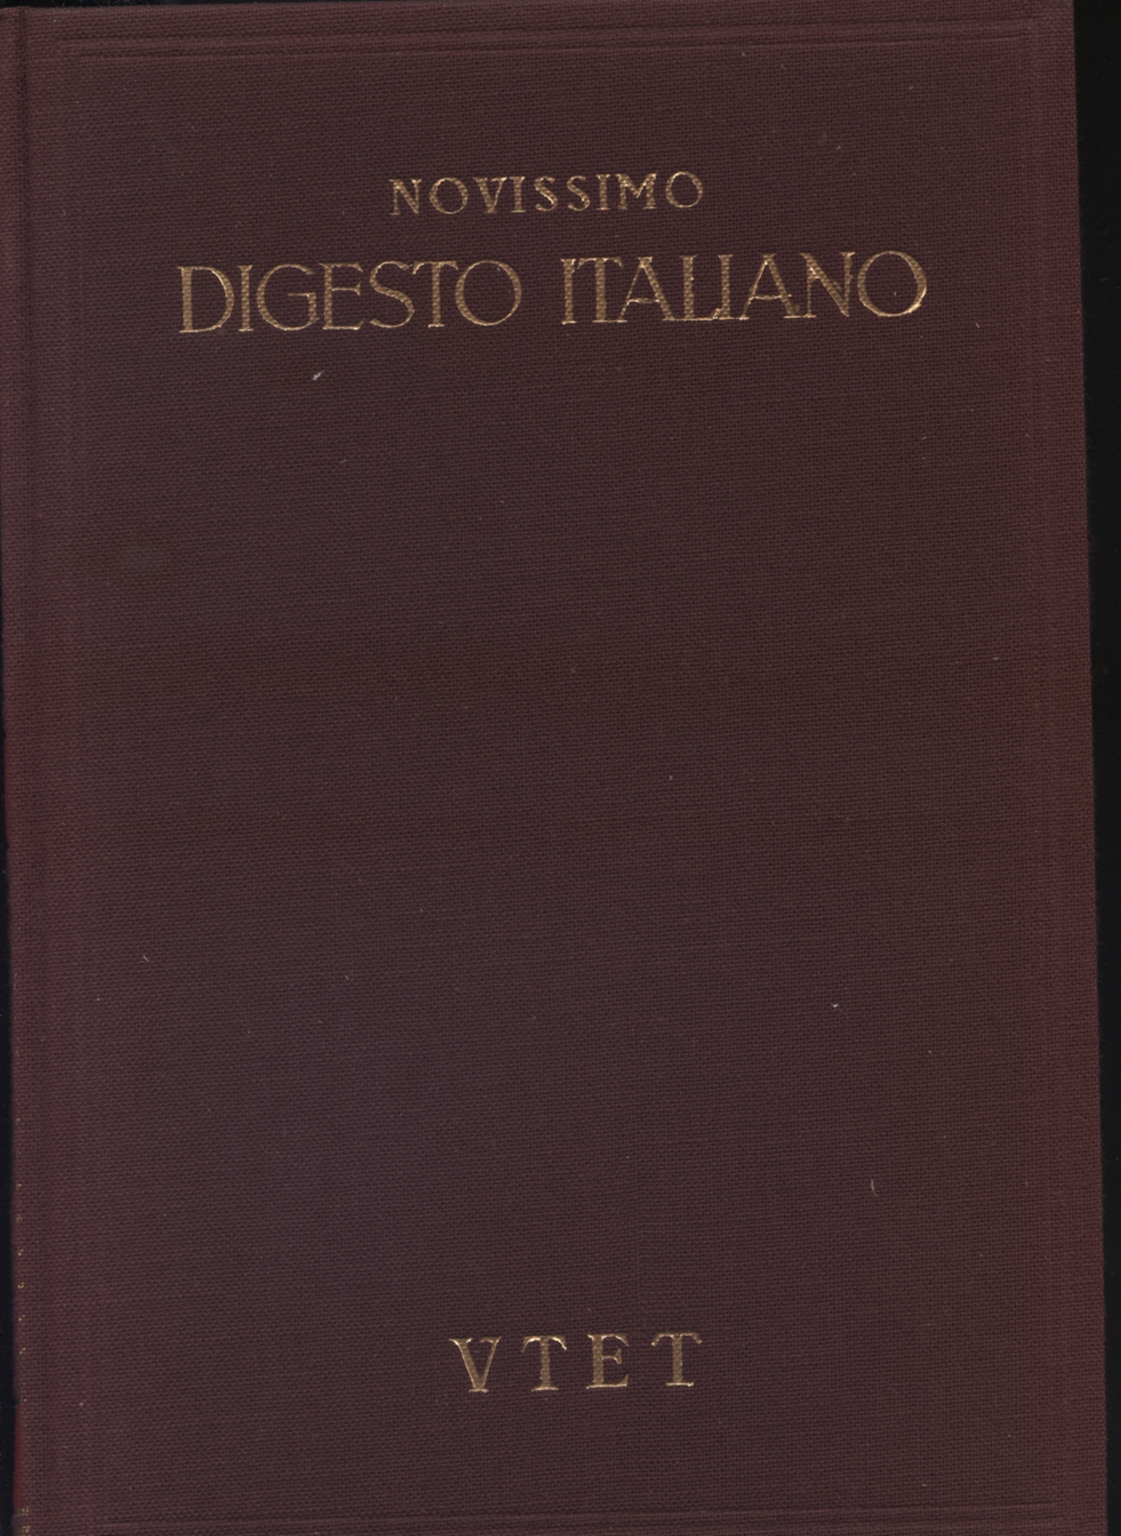 Novissimo digesto italiano. Volume V: CRI-DIS